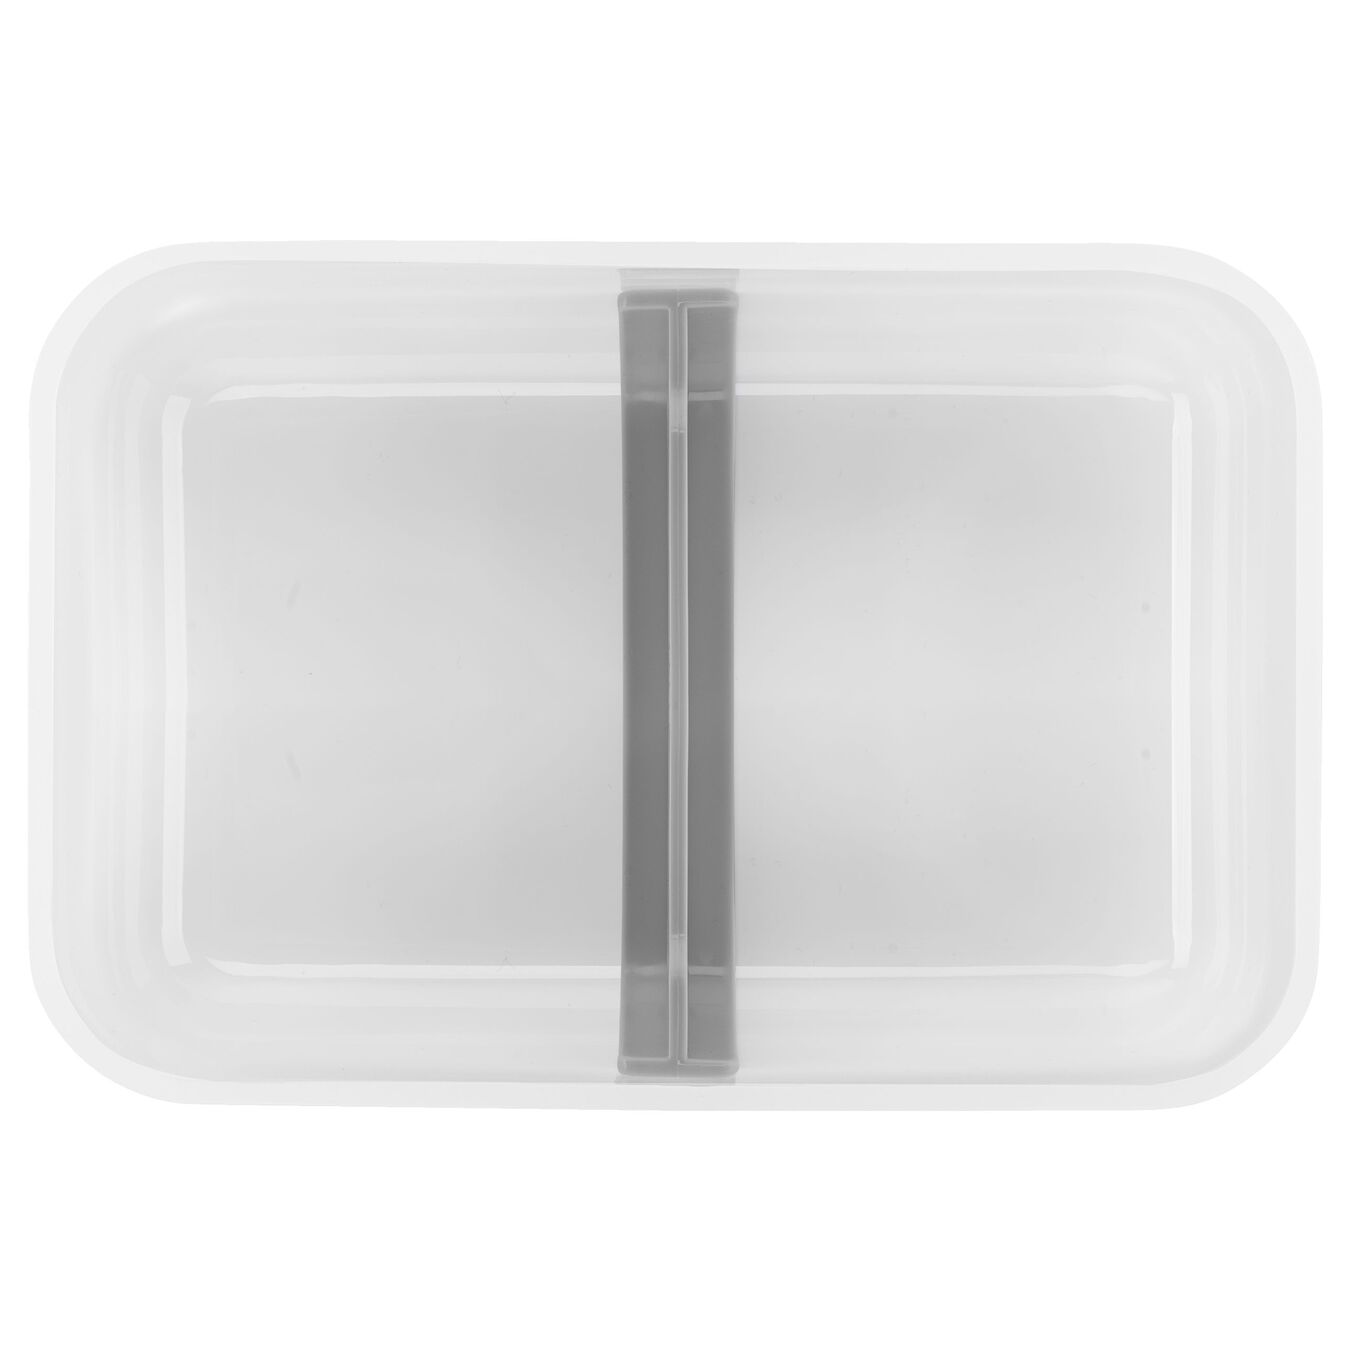 Lot de lunch box sous-vide L plate / 6-pcs, semi transparent-Gris,,large 5